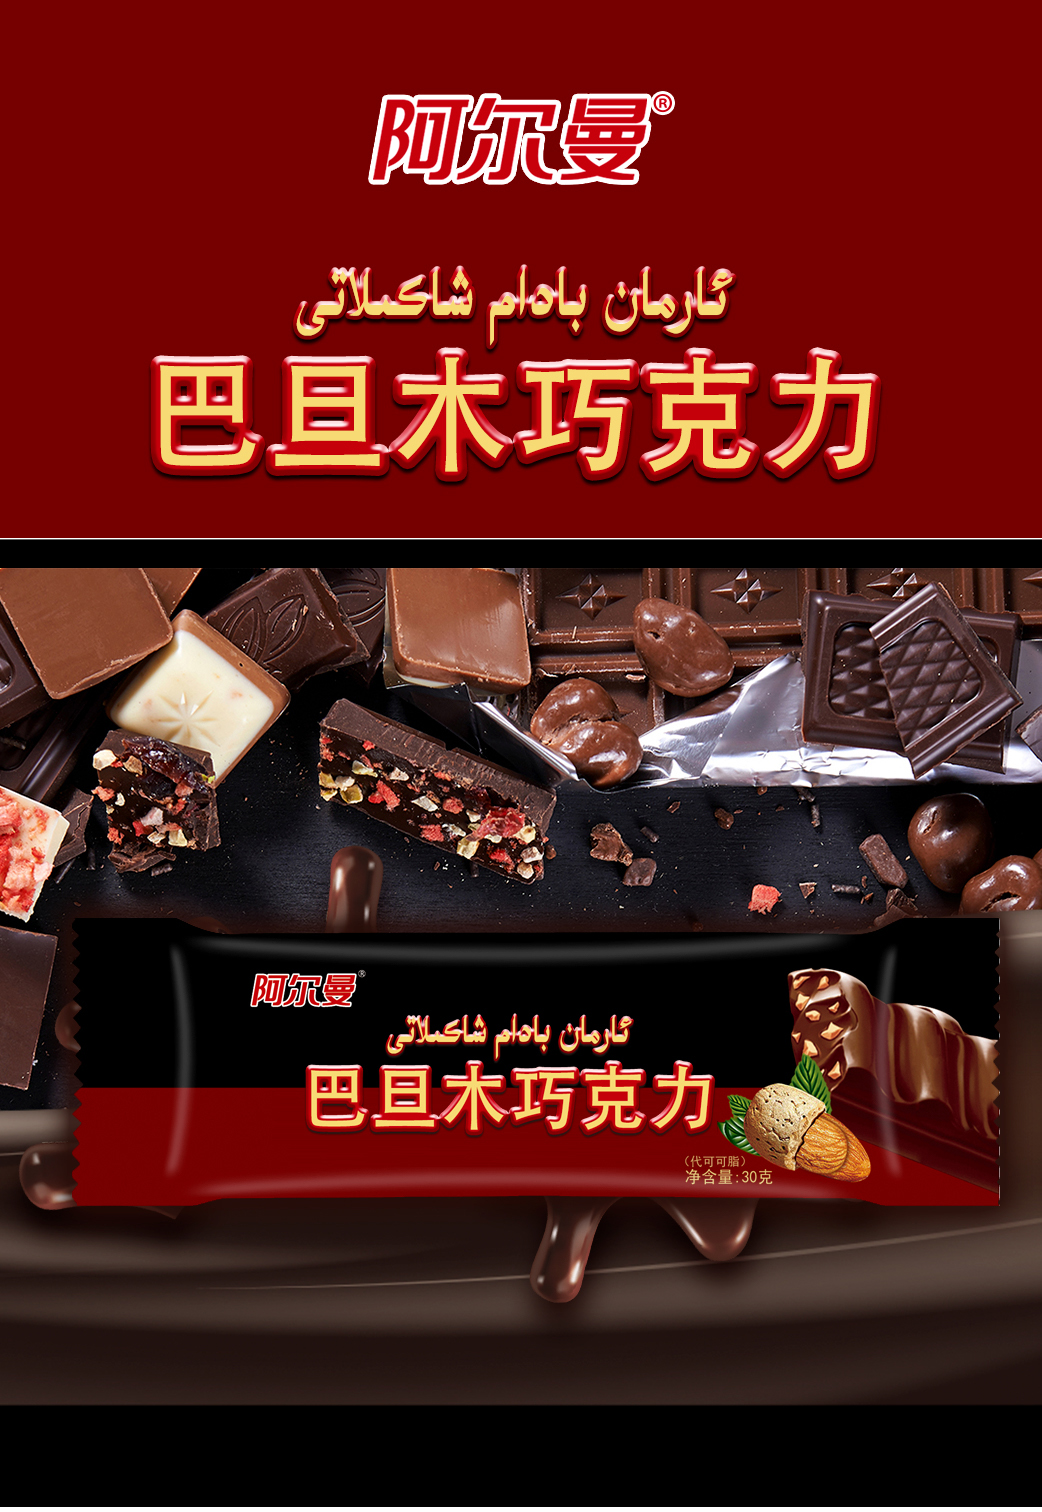 爱乐芬奶油巧克力2 - 新疆阿尔曼食品集团有限责任公司